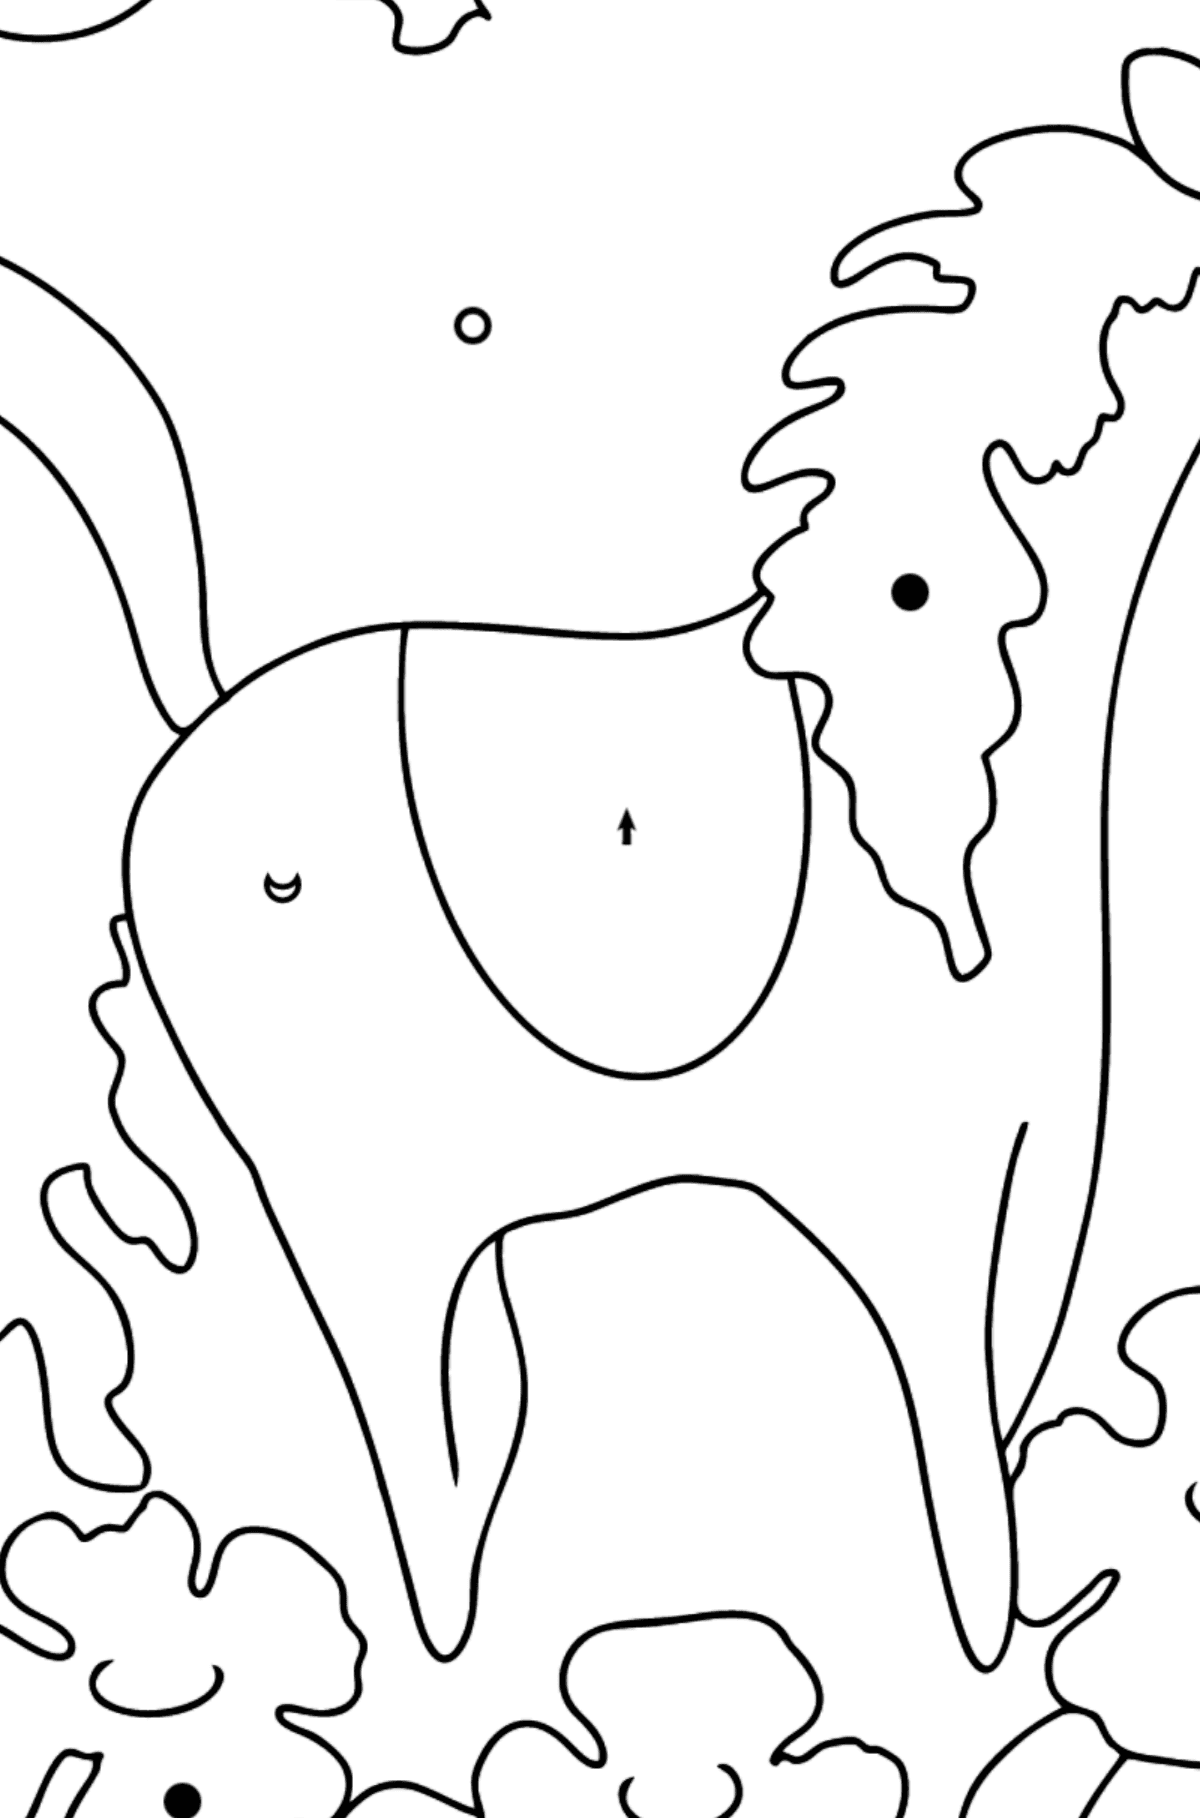 Конячка Розмальовка для дітей - Розмальовка по Символам і Геометричним Фігурам для дітей